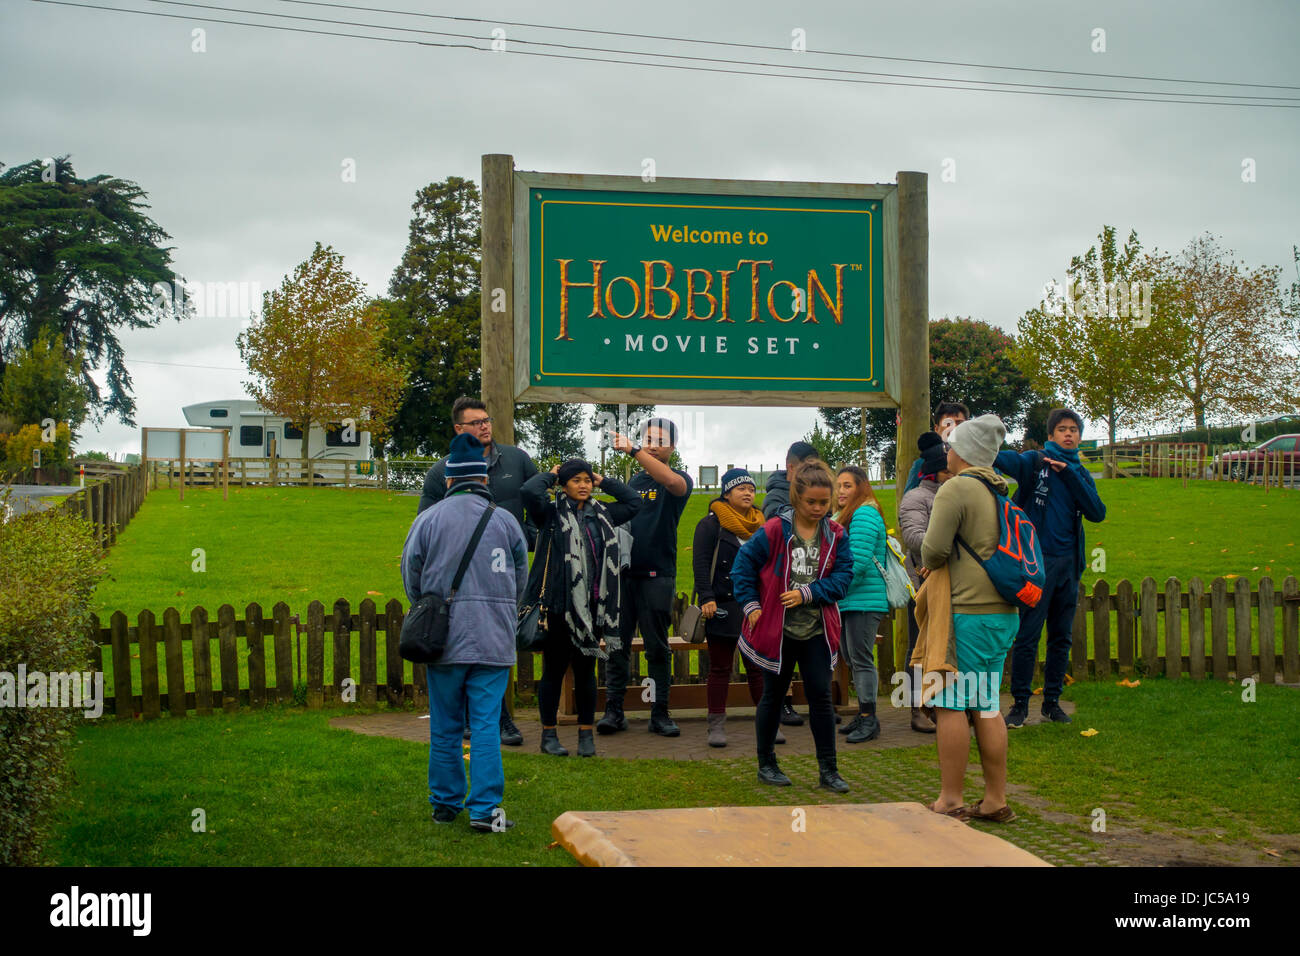 Isla del Norte, Nueva Zelanda- Mayo 16, 2017: Un pueblo no identificado posando en un cartel de bienvenida por la entrada a la aldea Hobbiton Hobbiton en películas. Foto de stock